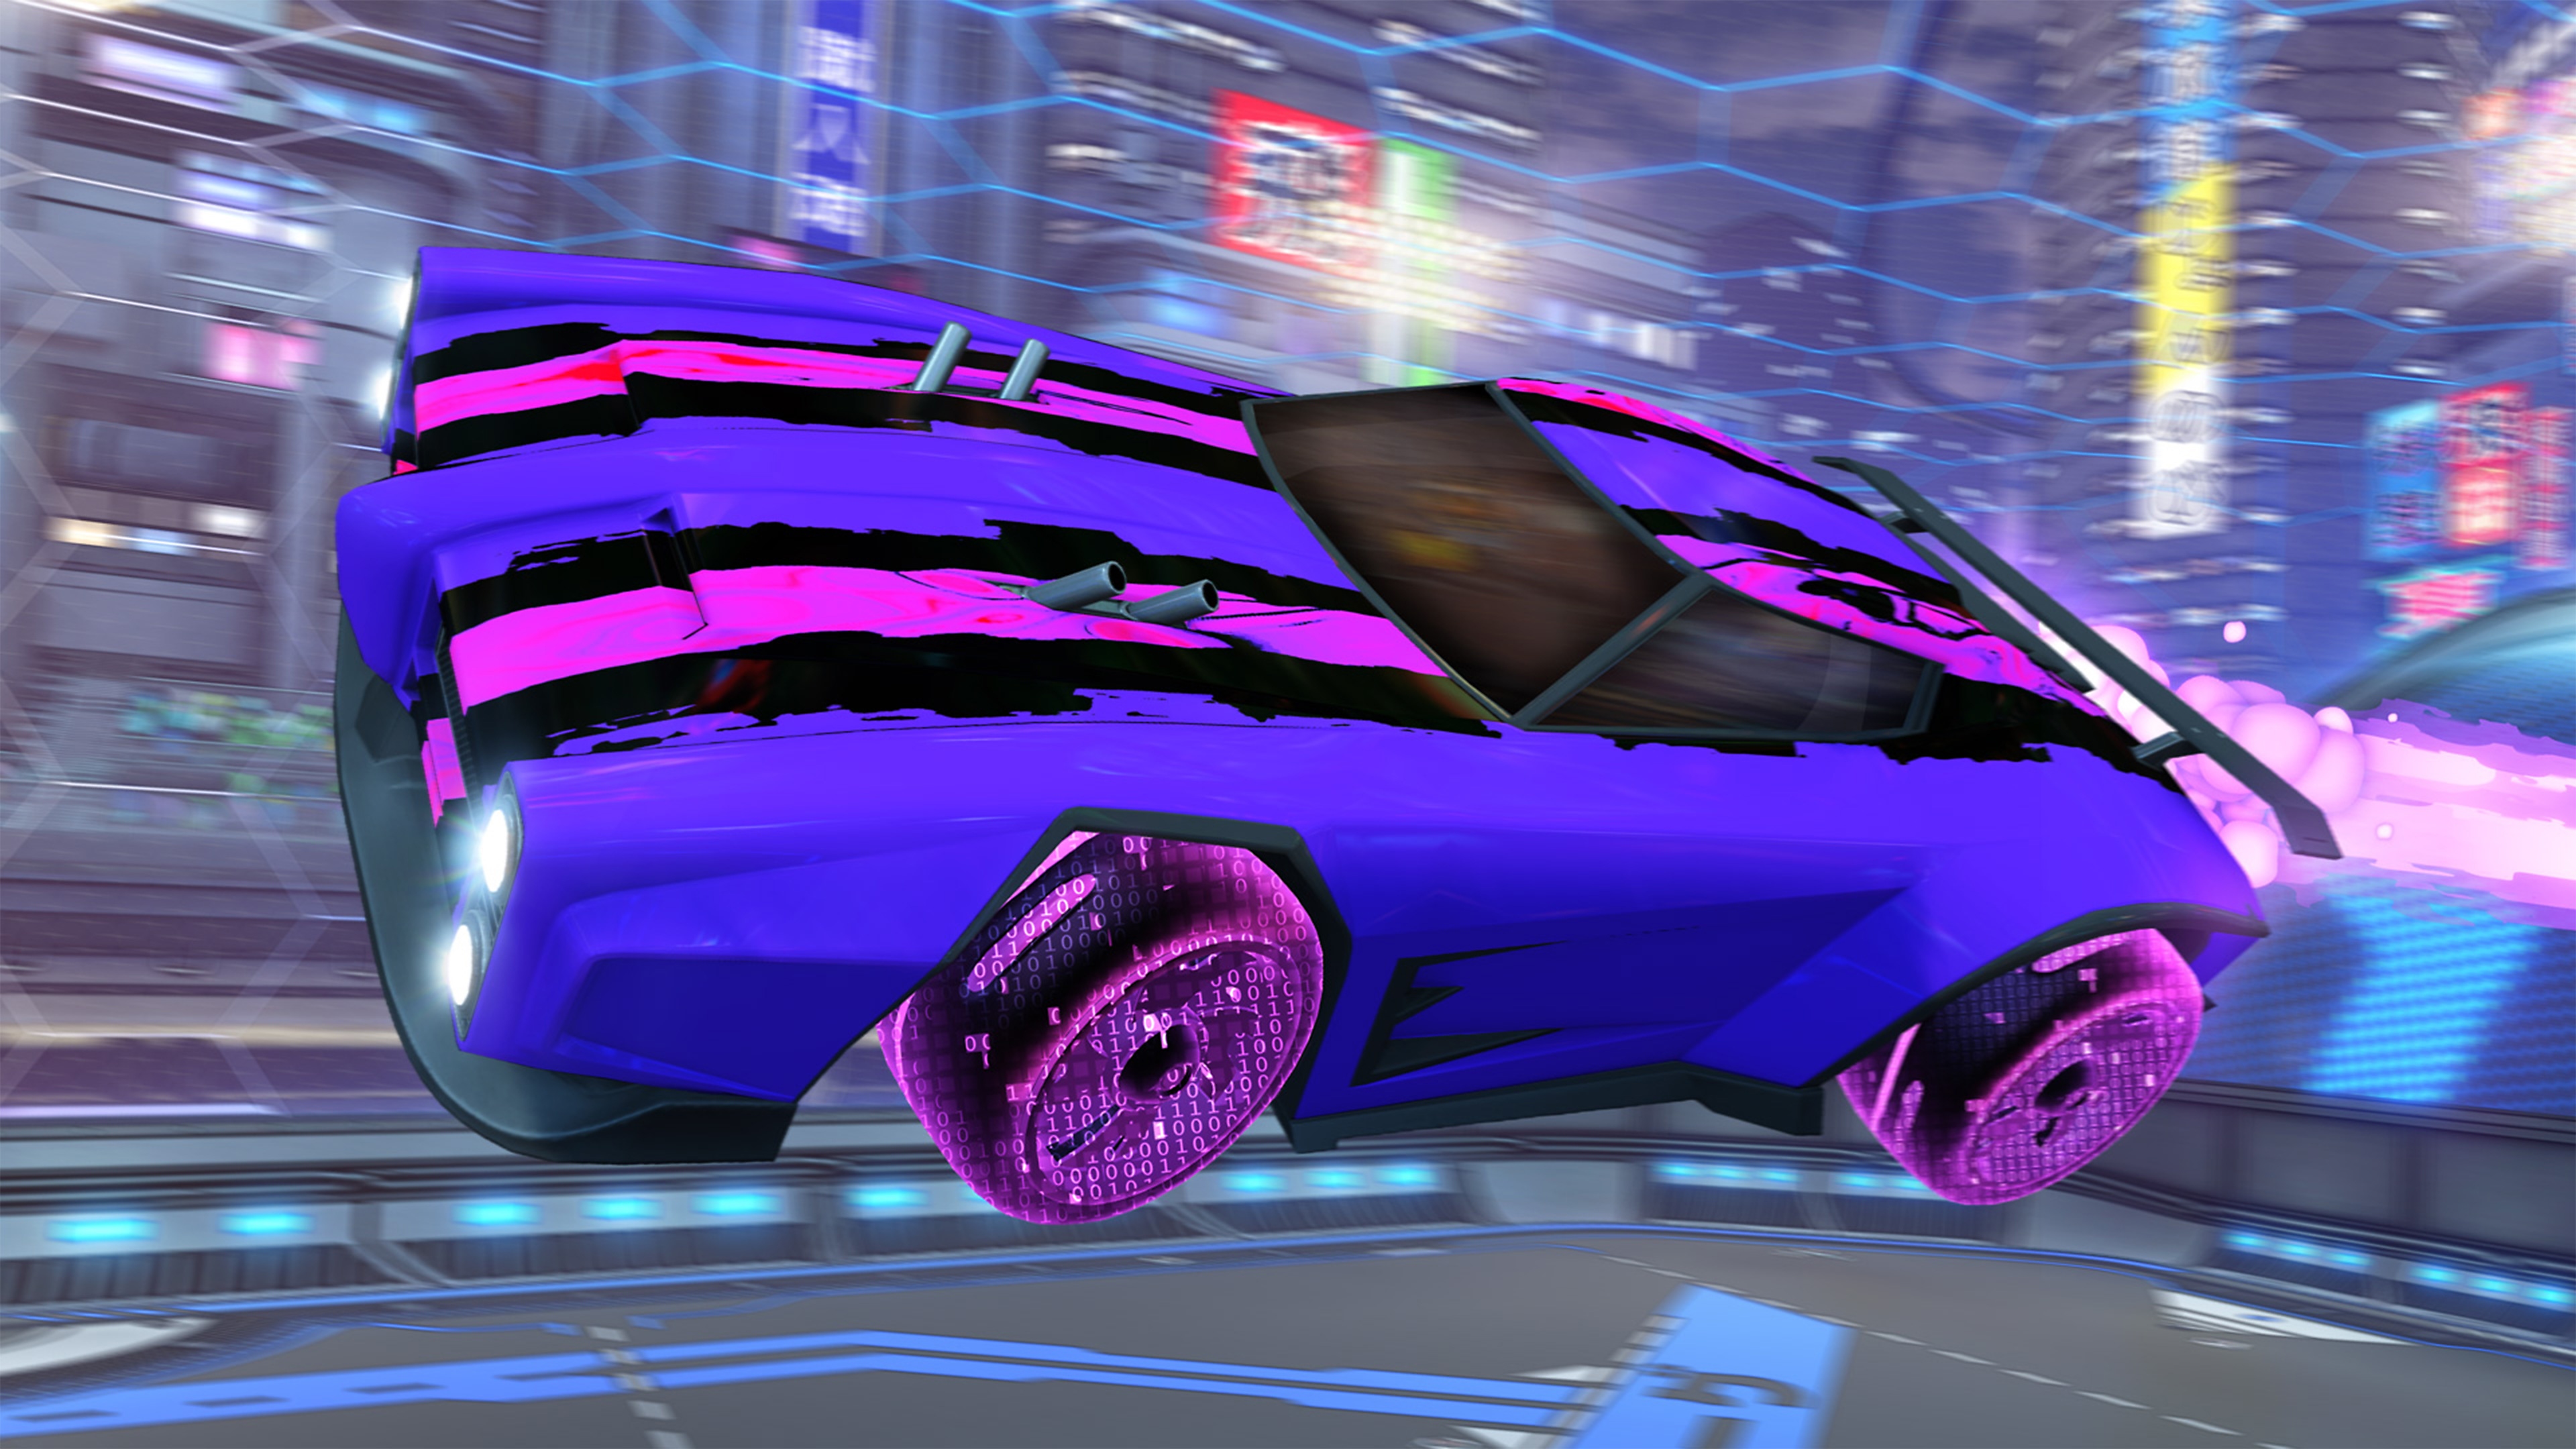 Rocket League – snímek obrazovky zachycující purpurové auto s růžovými a černými závodními pruhy